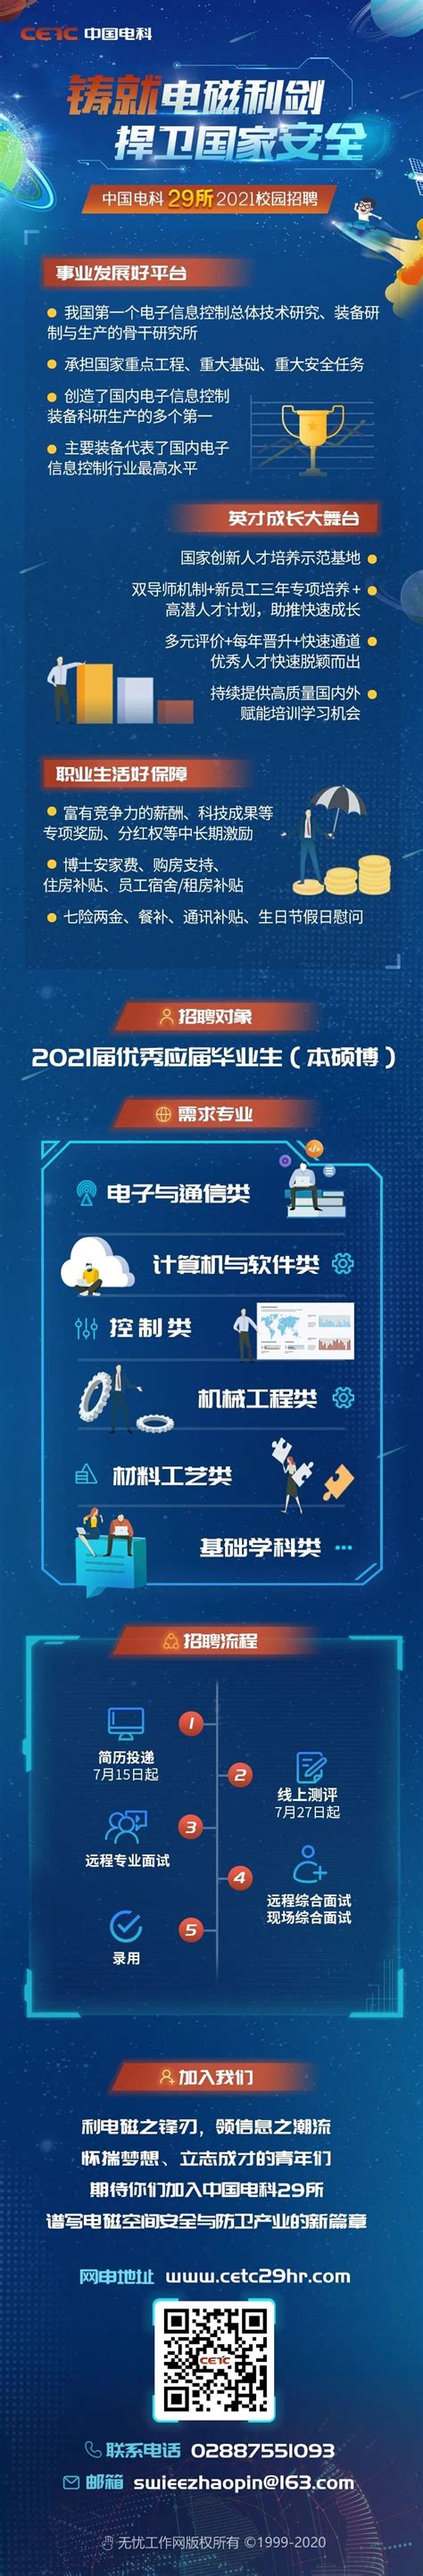 中国电科29所2021年校园招聘开始啦